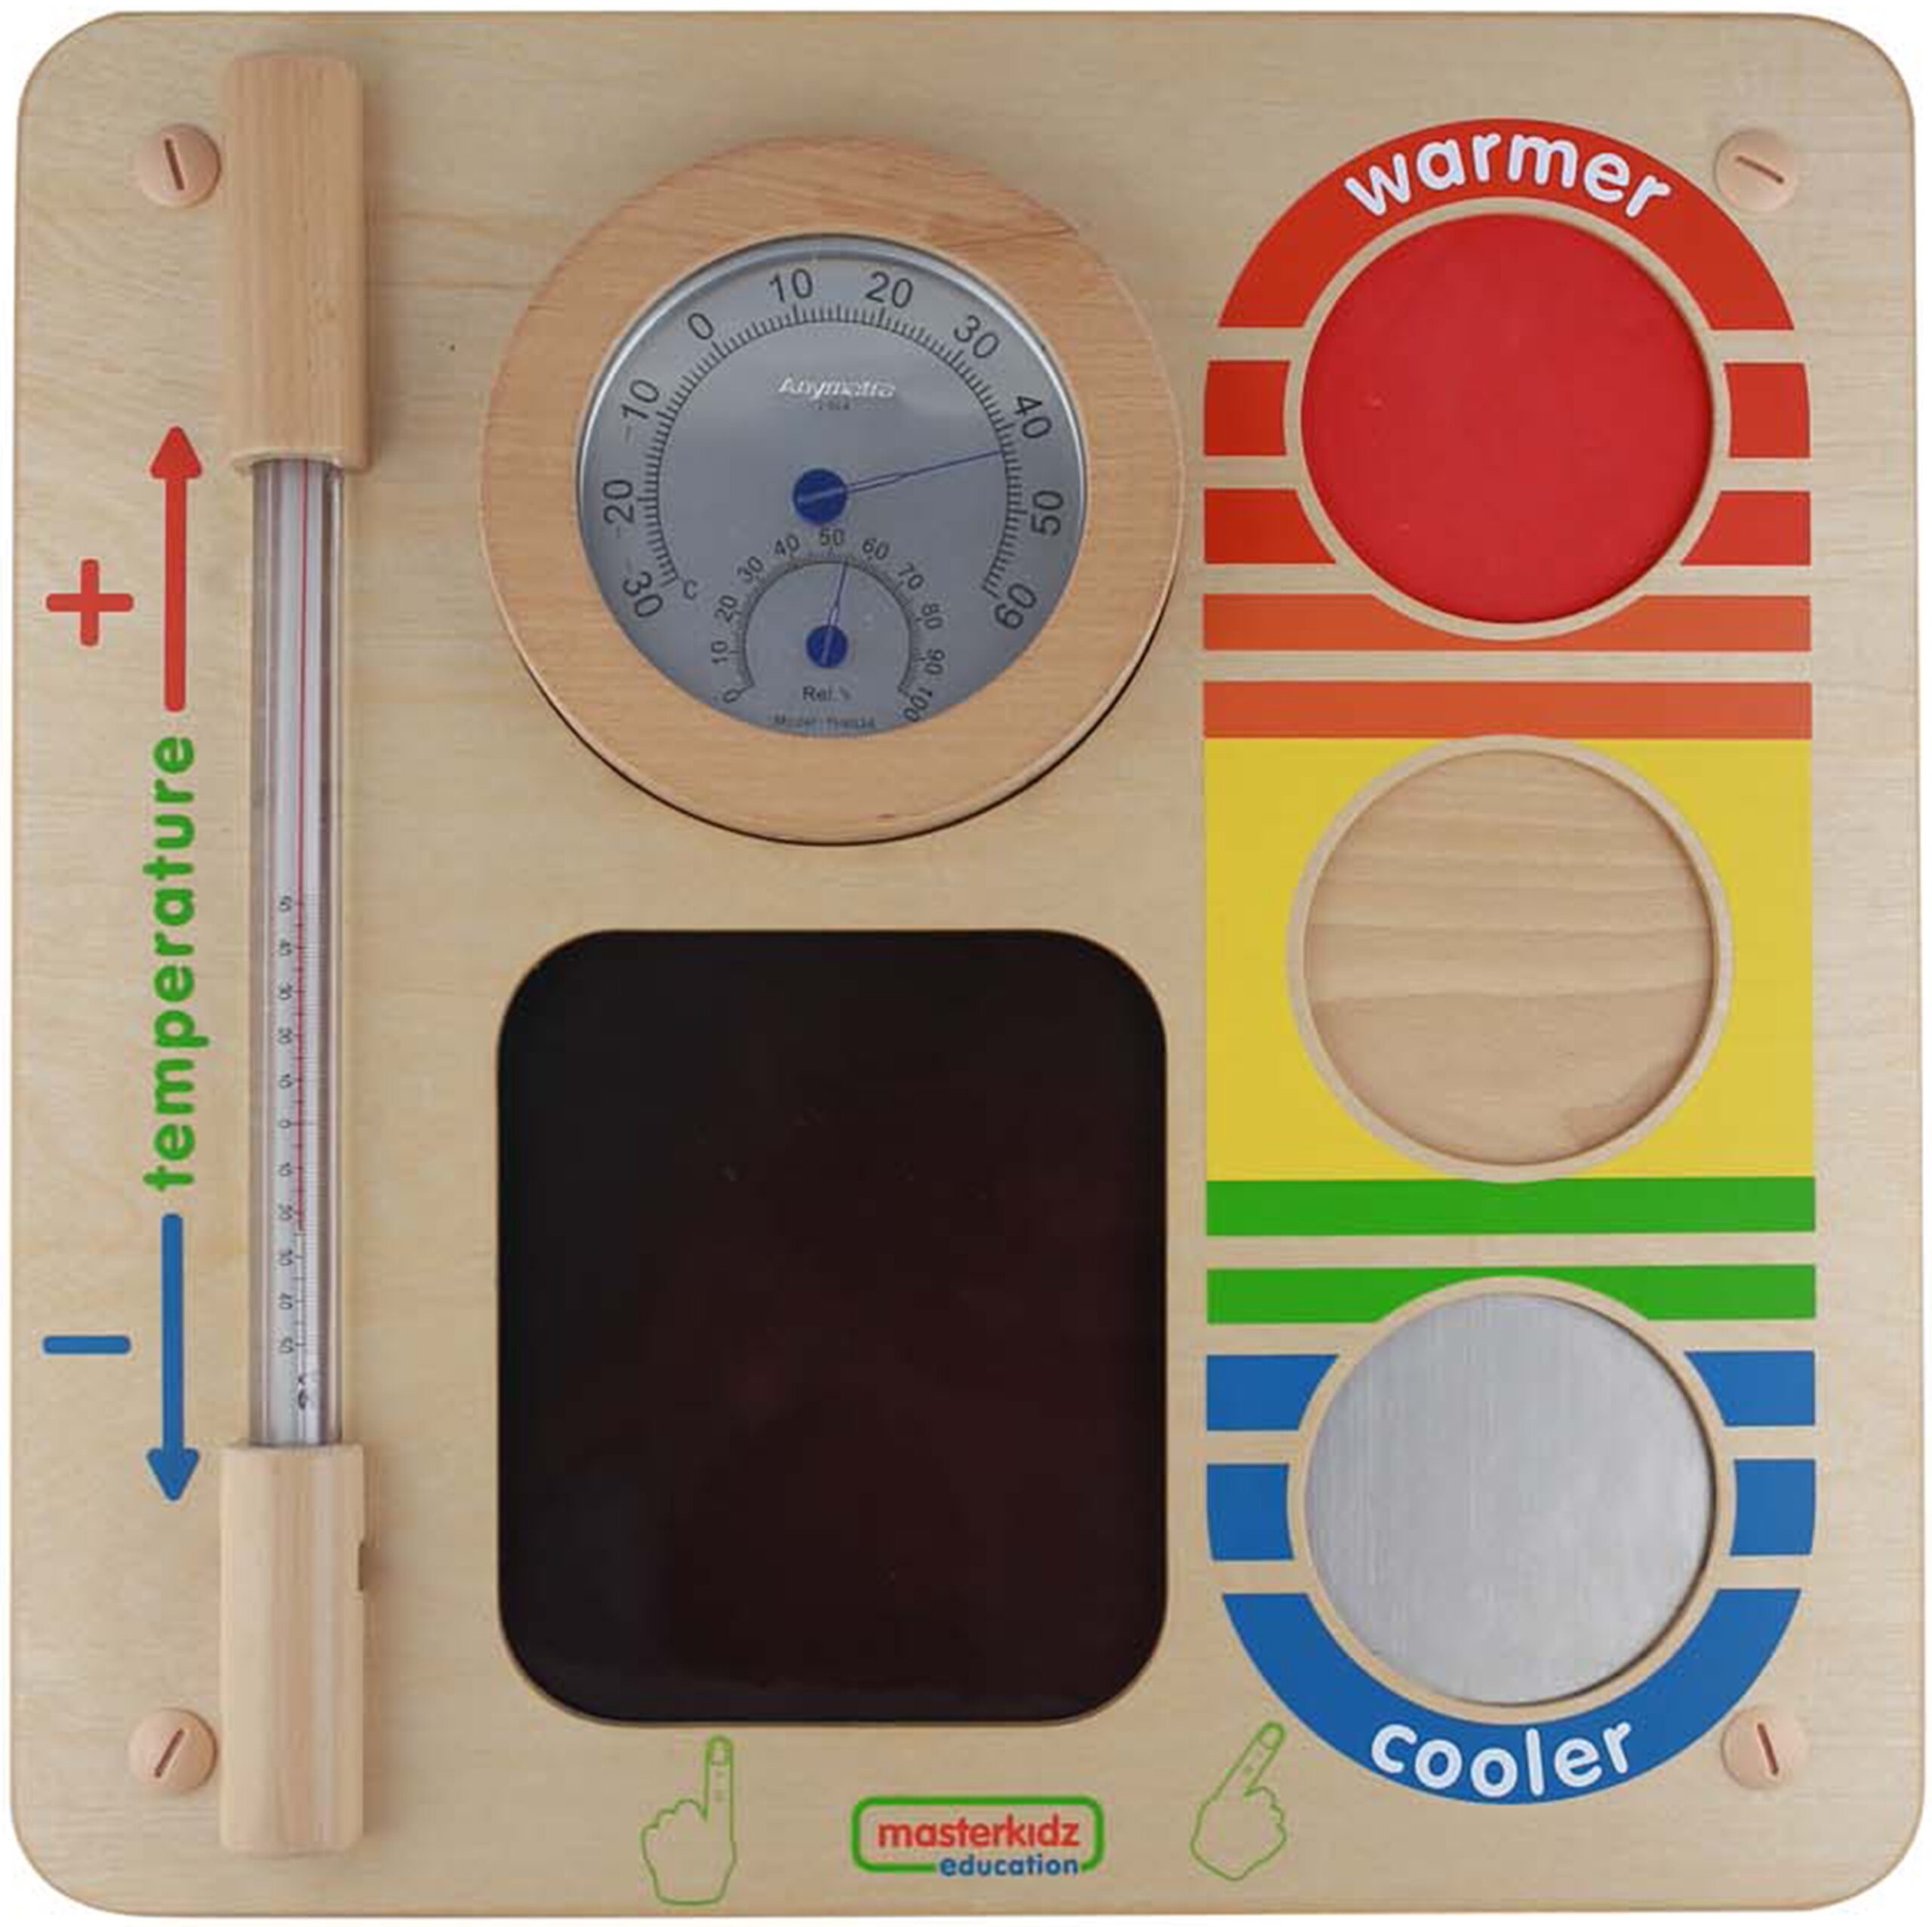 Nauka o temperaturze - ścienna tablica edukacyjna Masterkidz flex, zabawka dla dzieci